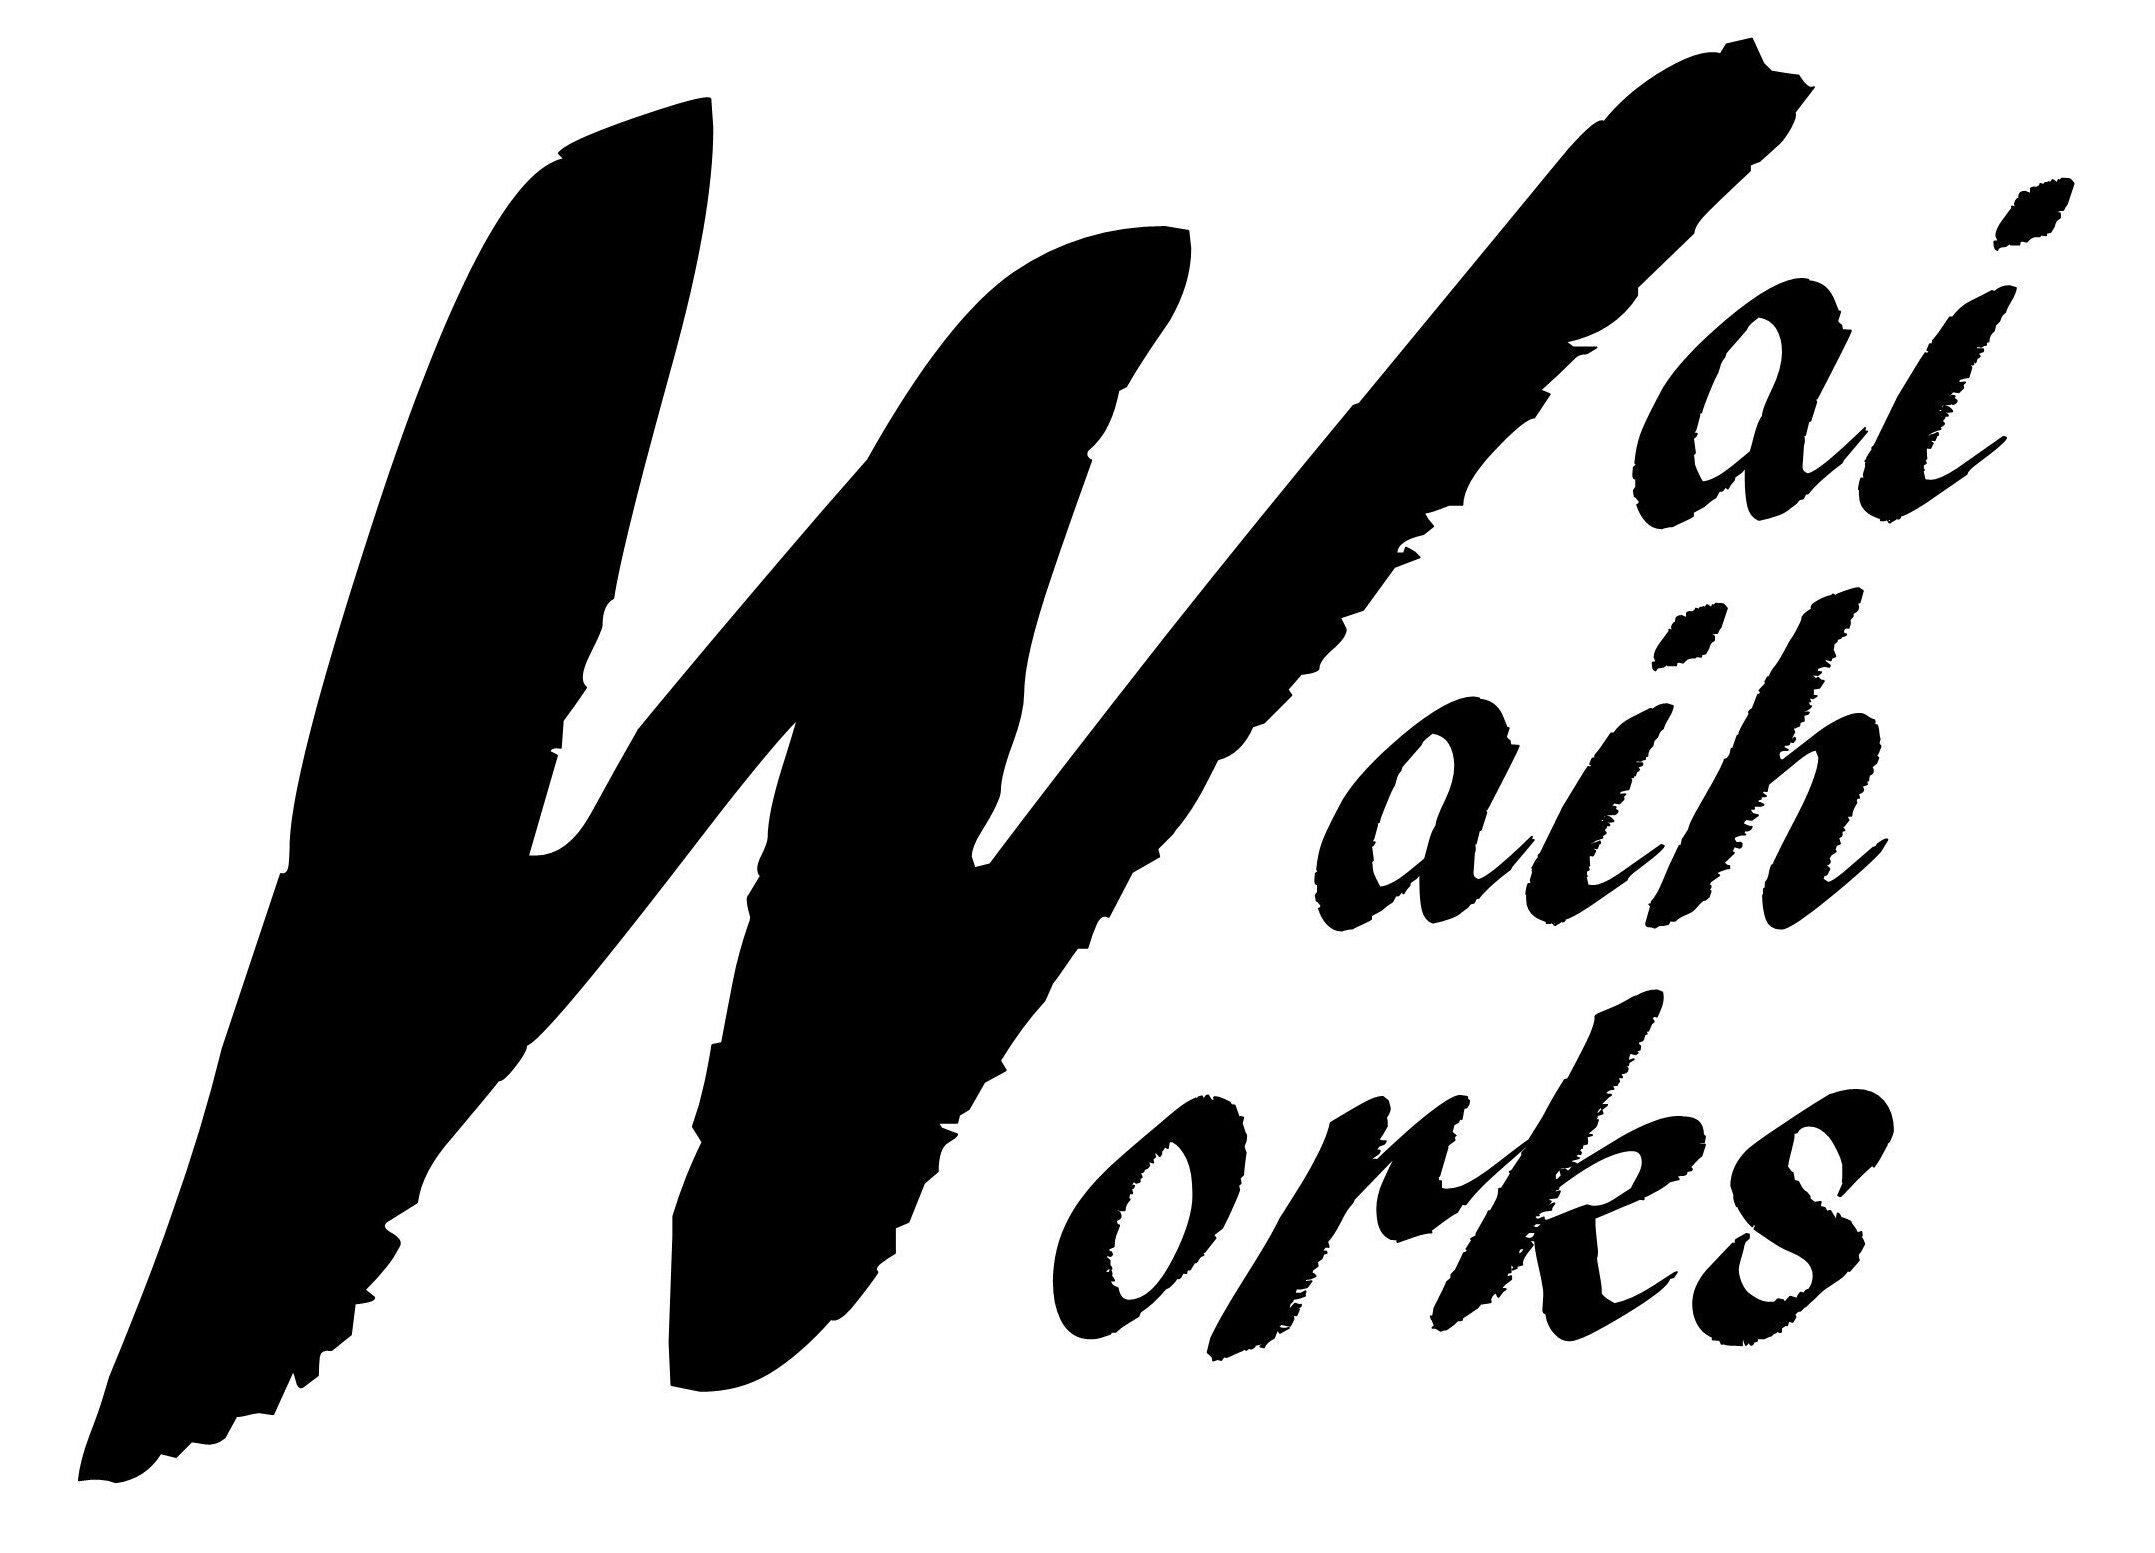 Waiwaih Works ansichtkaarten, foto's en overige platte zaken